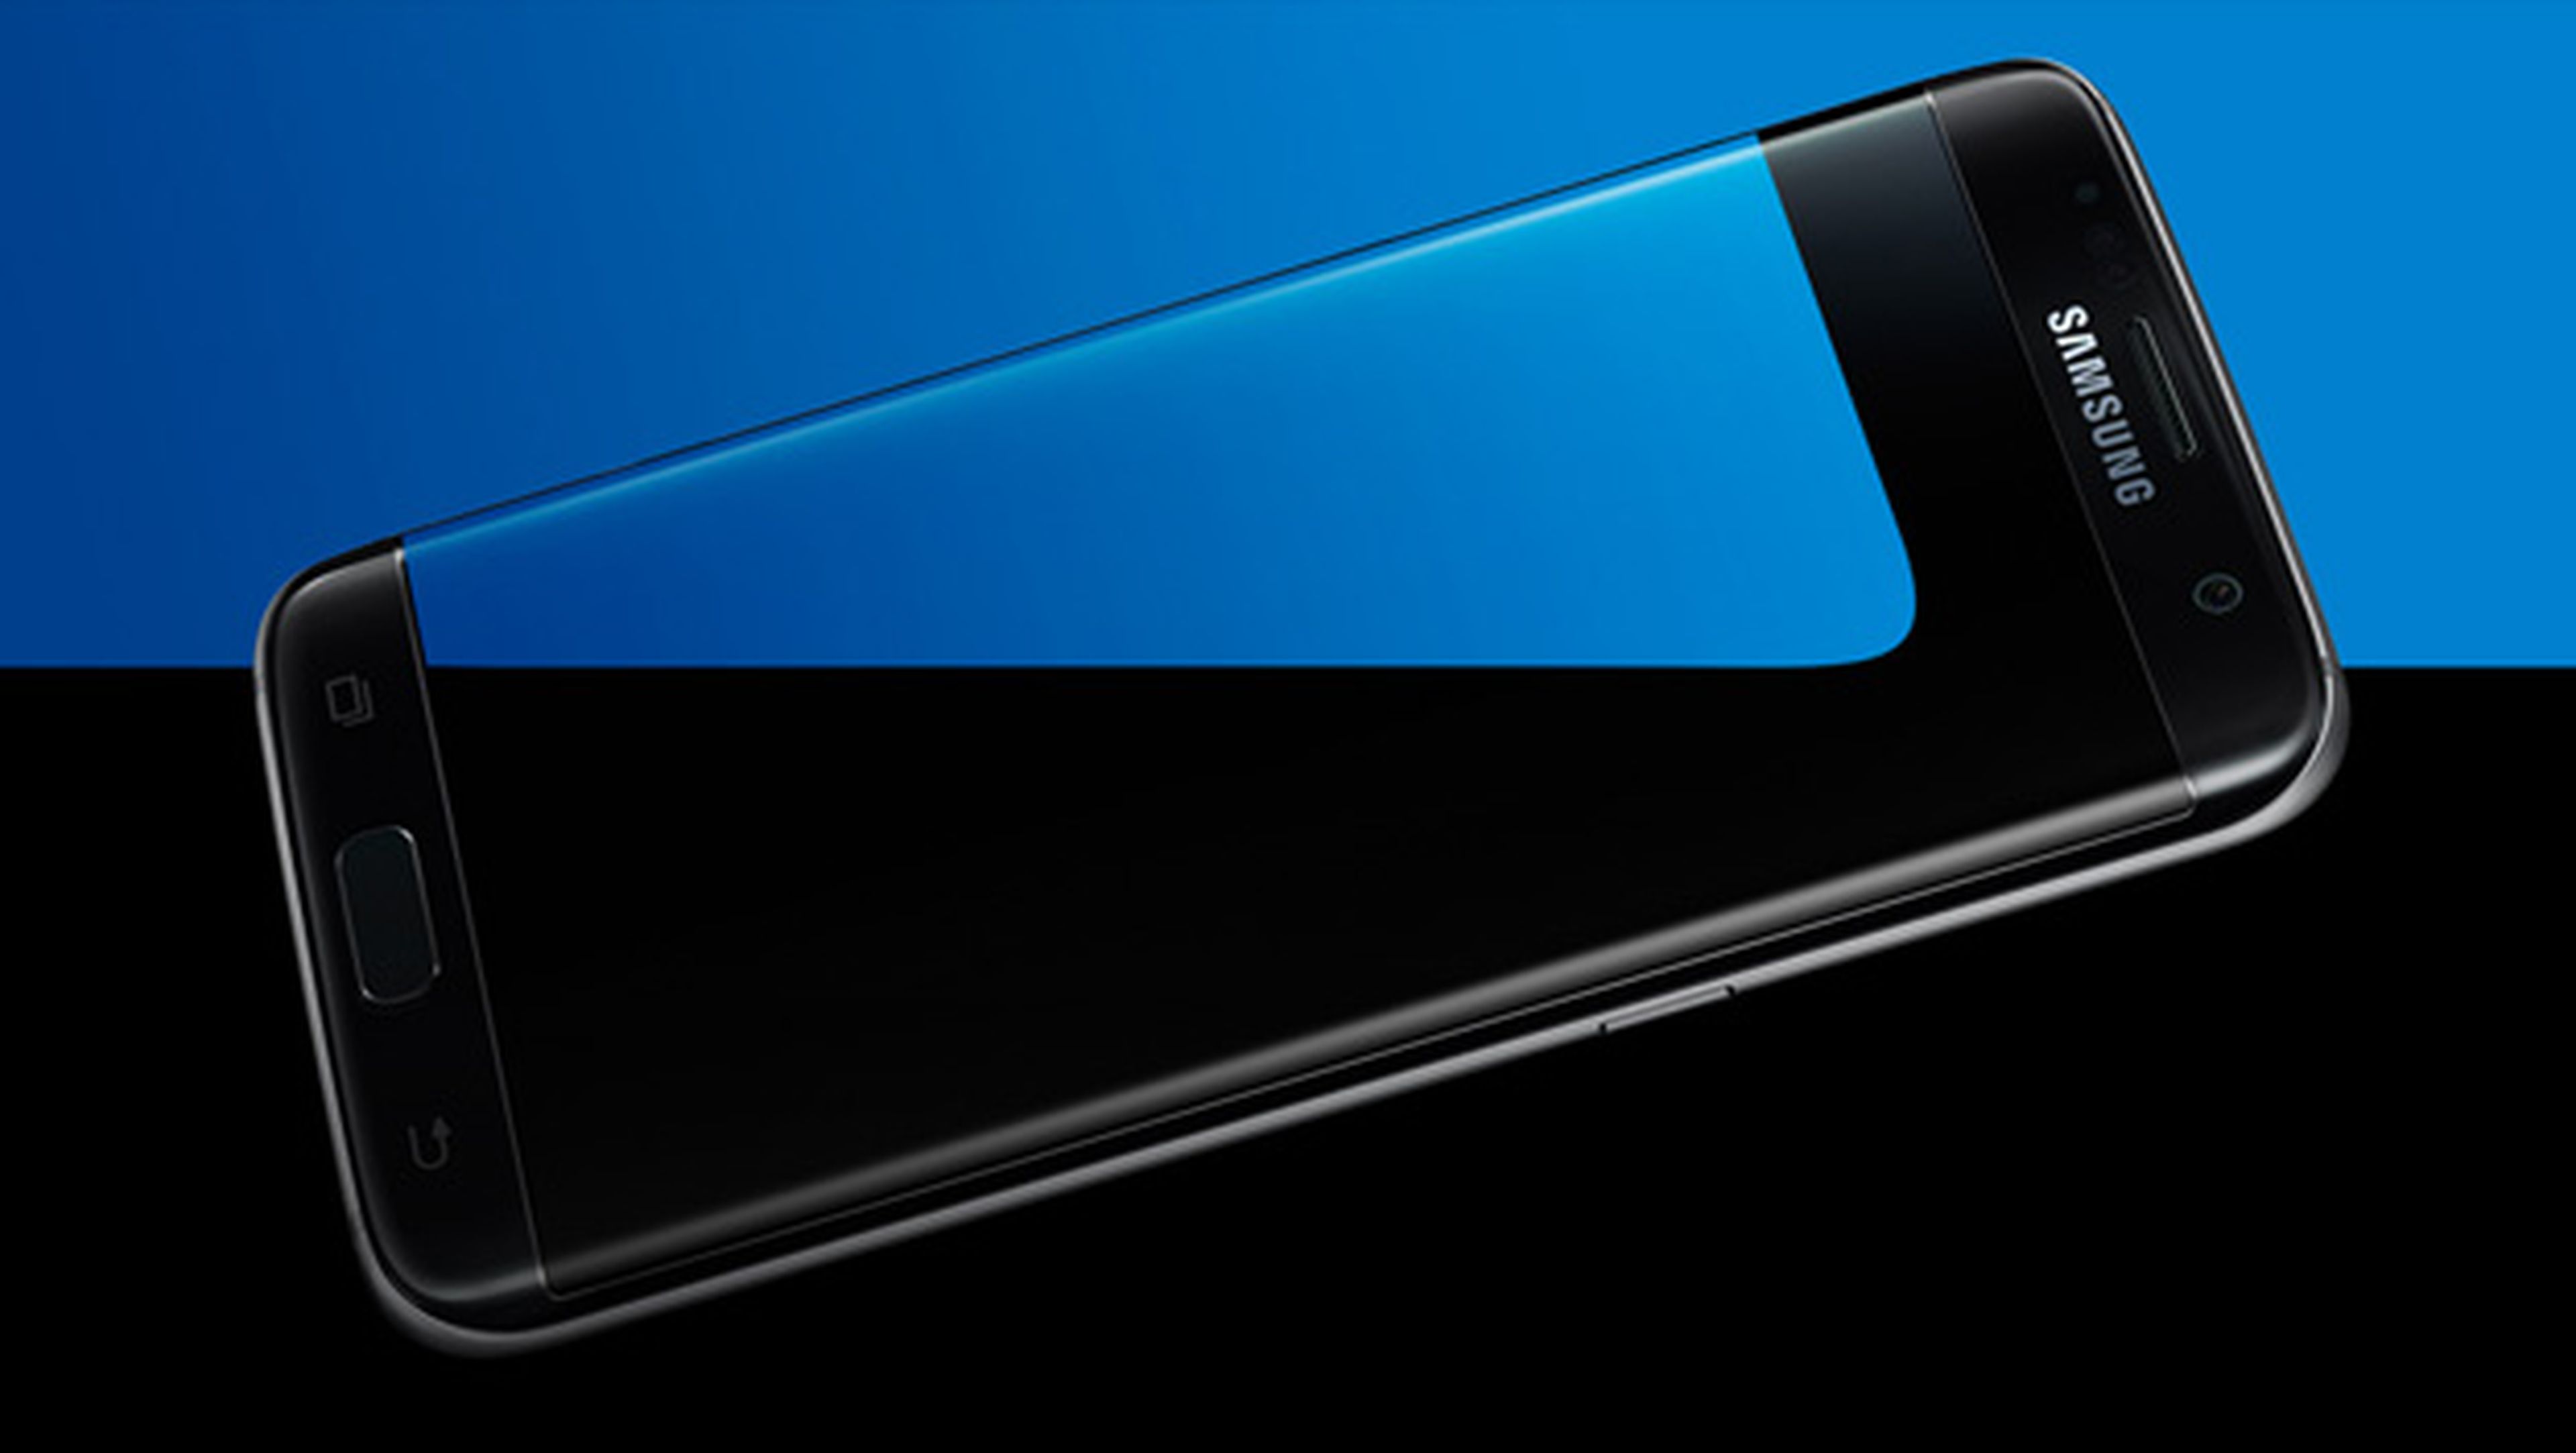 Llega Android 7.0 Nougat para el Samsung Galaxy S7